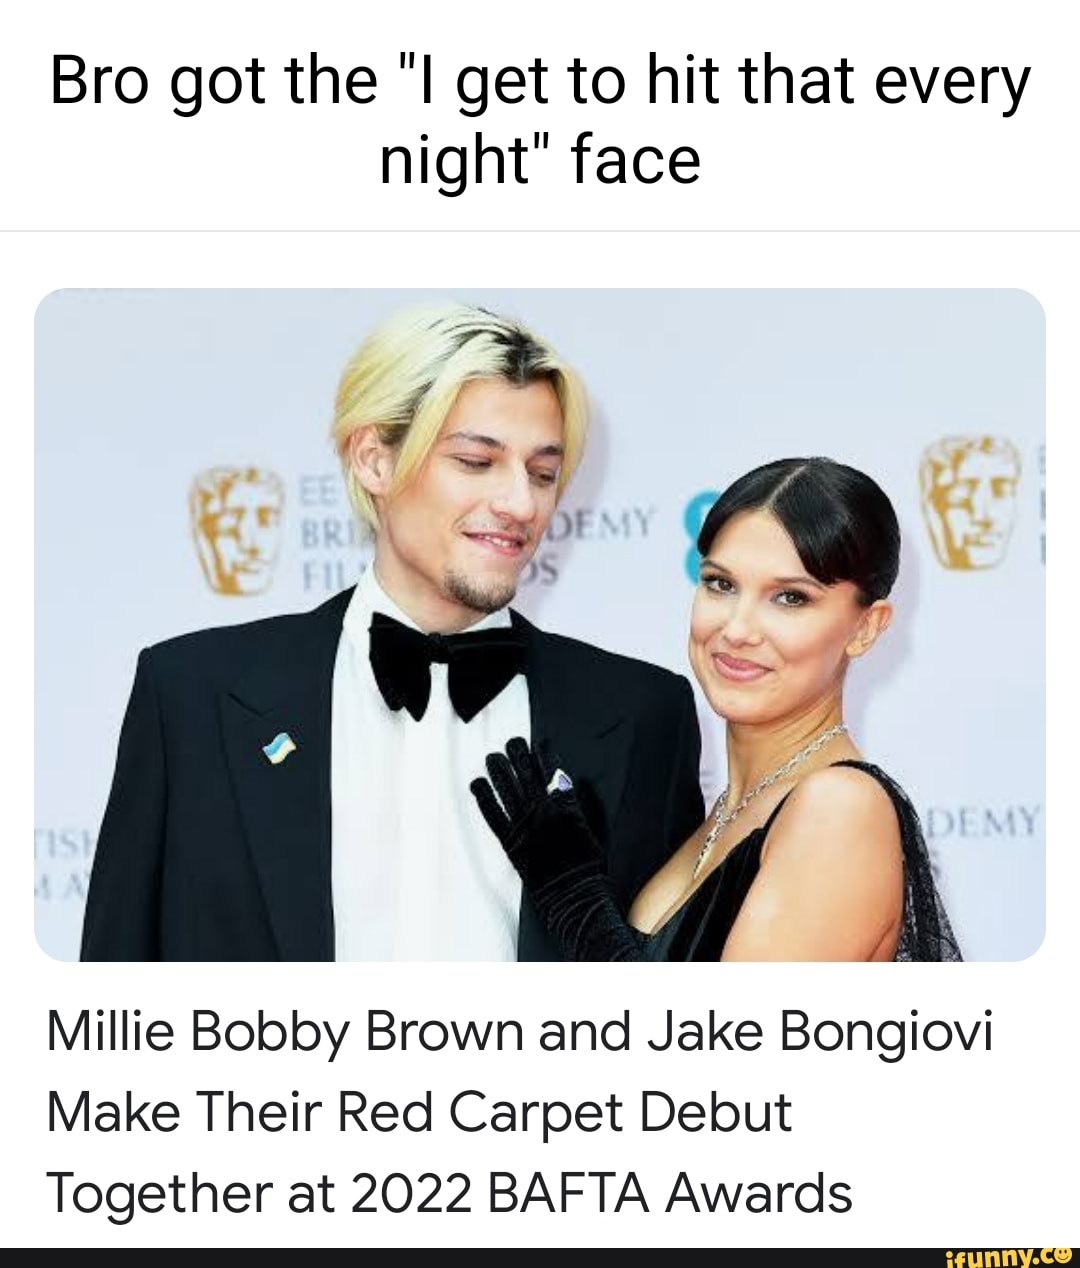 Bafta 2022: Millie Bobby Brown and Jake Bongiovi make red carpet debut